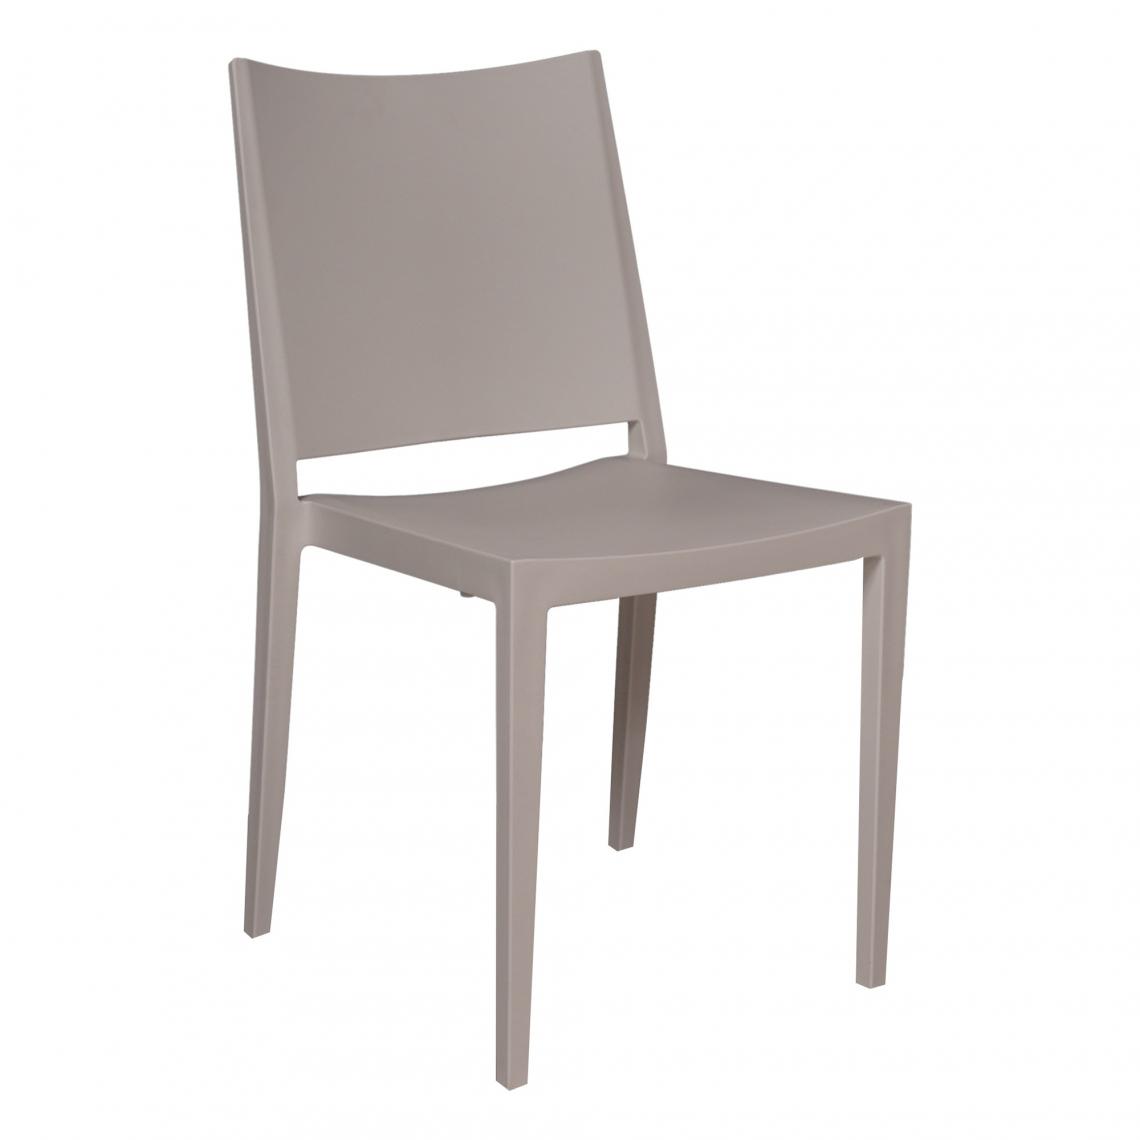 Alter - Chaise empilable classique sans accoudoirs, pour intérieur et extérieur, en polypropylène, 46x56h82 cm, couleur Blanc - Chaises